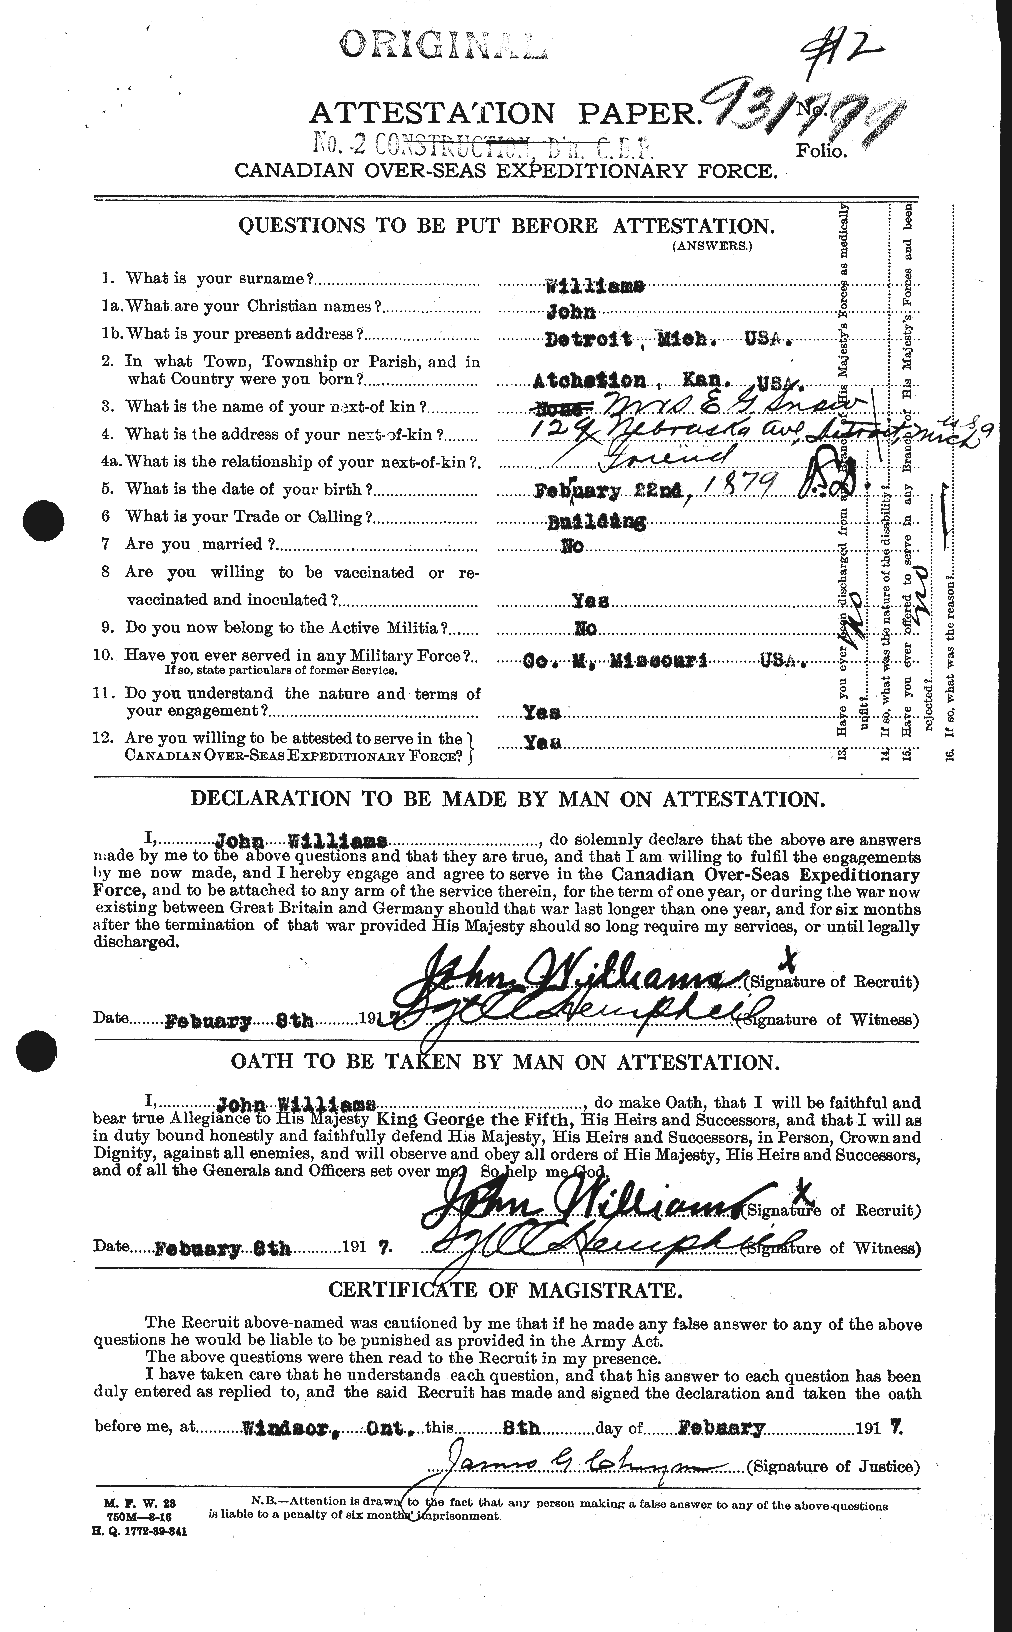 Dossiers du Personnel de la Première Guerre mondiale - CEC 672960a